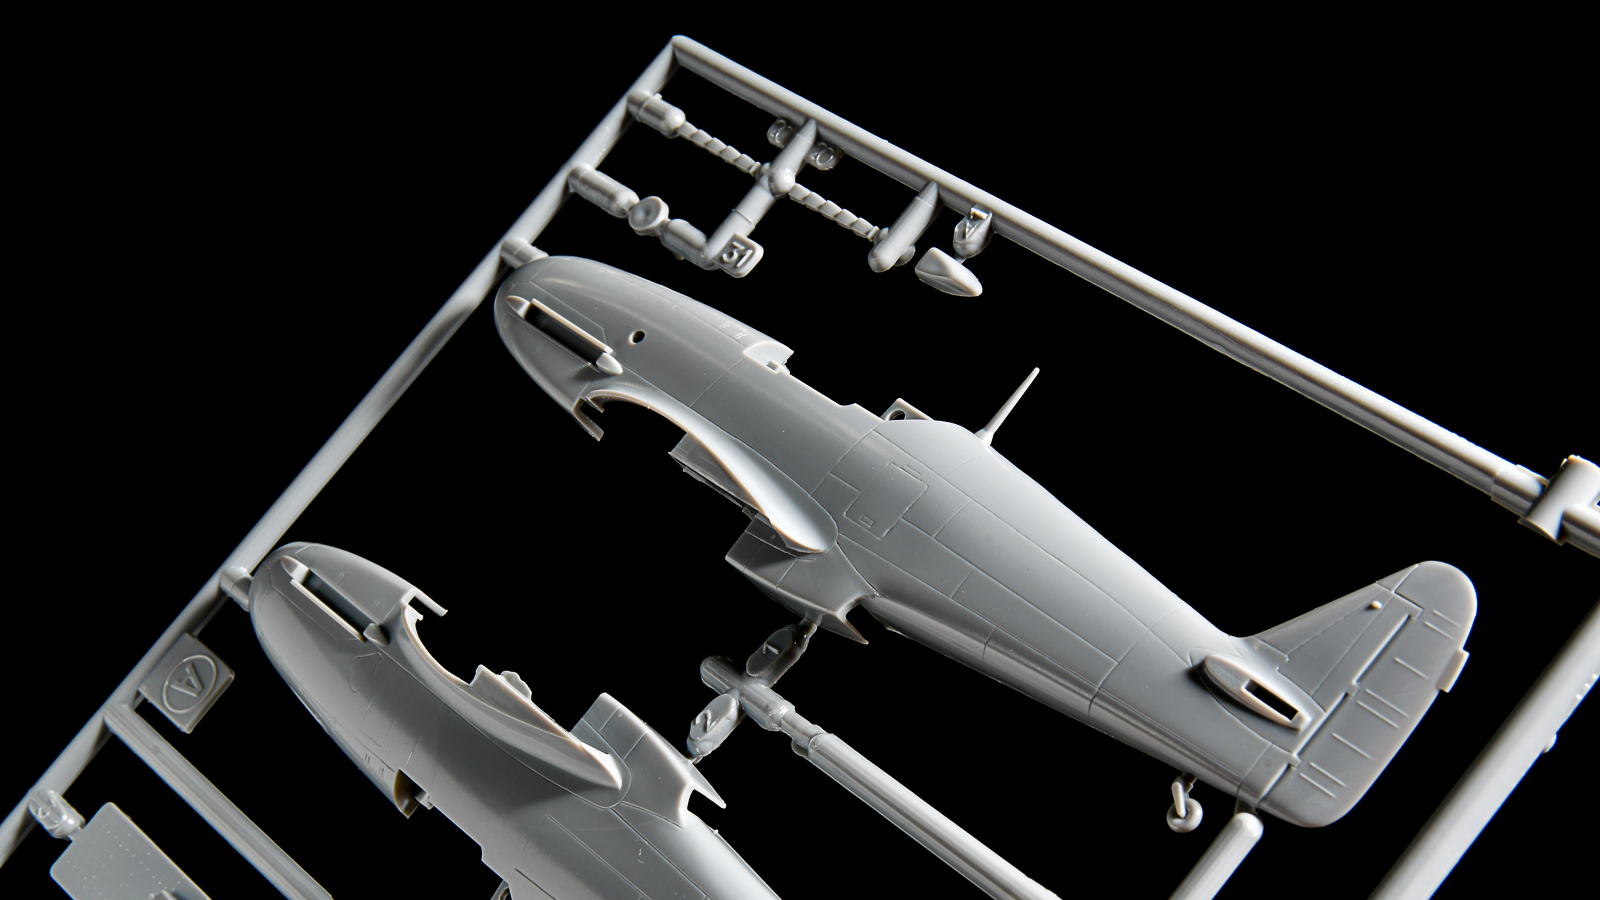 ハセガワ1 72飛行機模型ピックアップ コレクションスケール 1 72 の真髄を体感できるレジェンドプラモ 飛燕 Nippper ニッパーを握るすべての人と モケイの楽しさをシェアするサイト